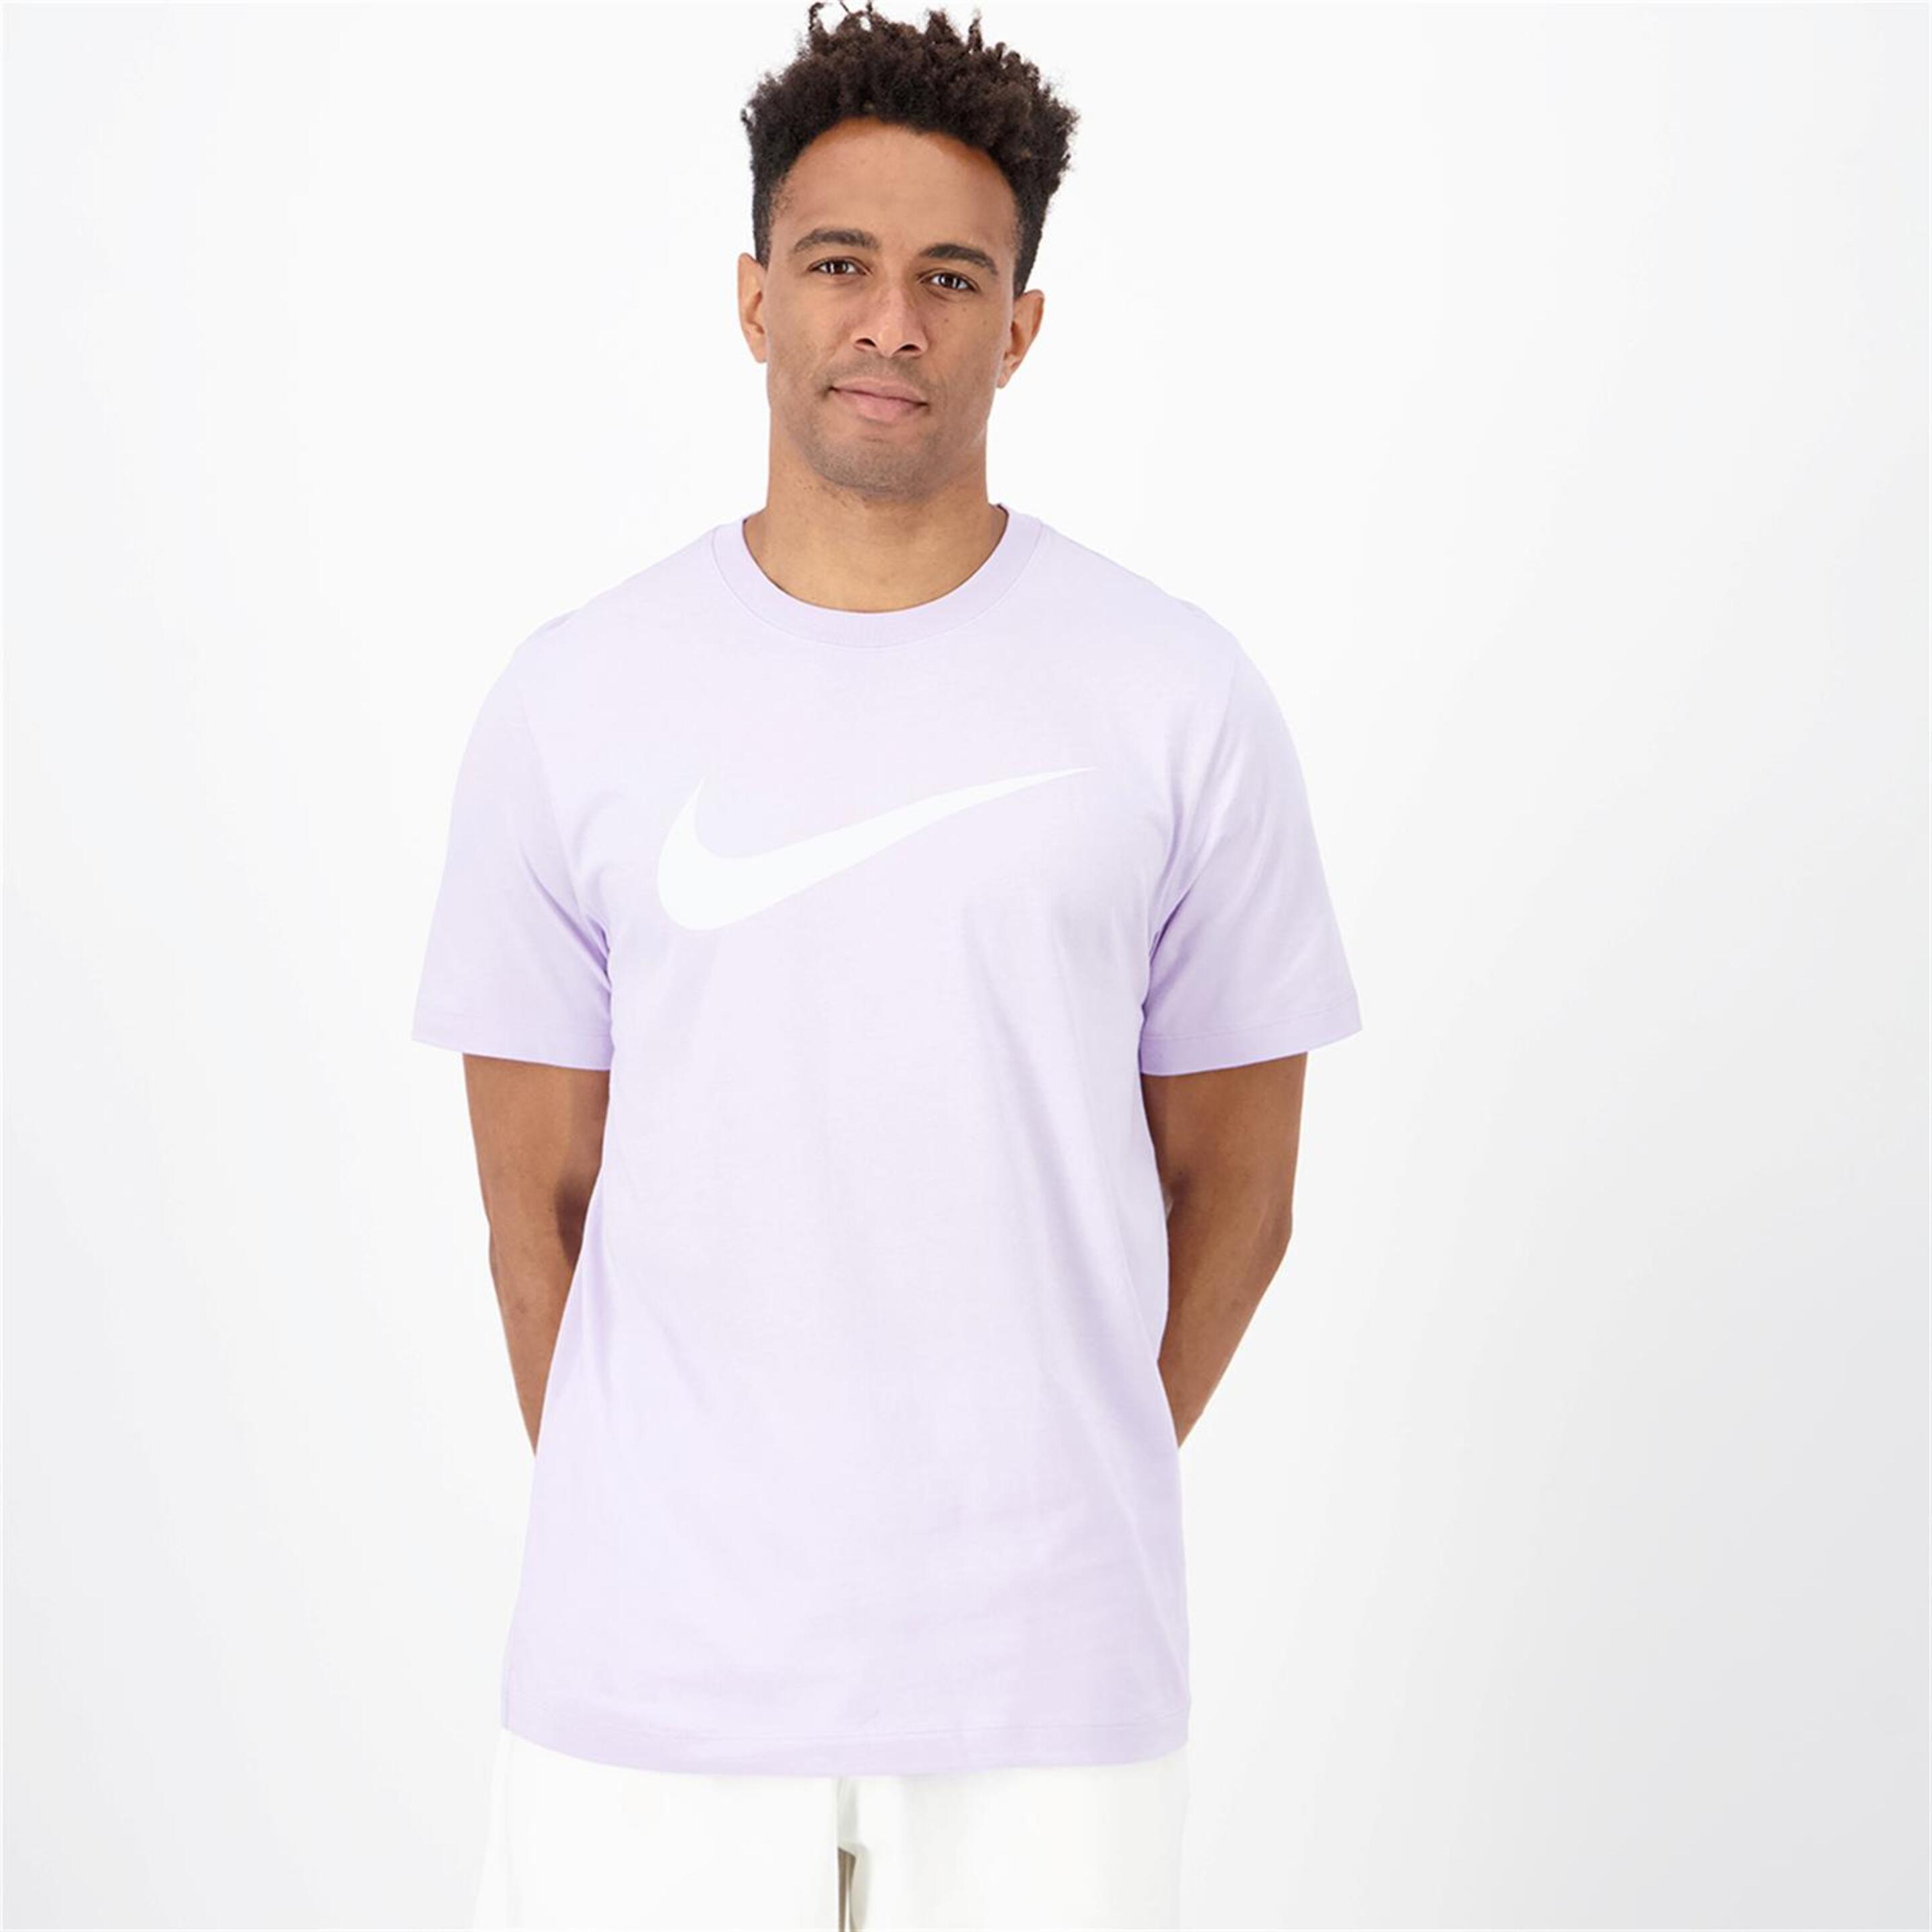 Nike Swoosh - morado - Camiseta Hombre